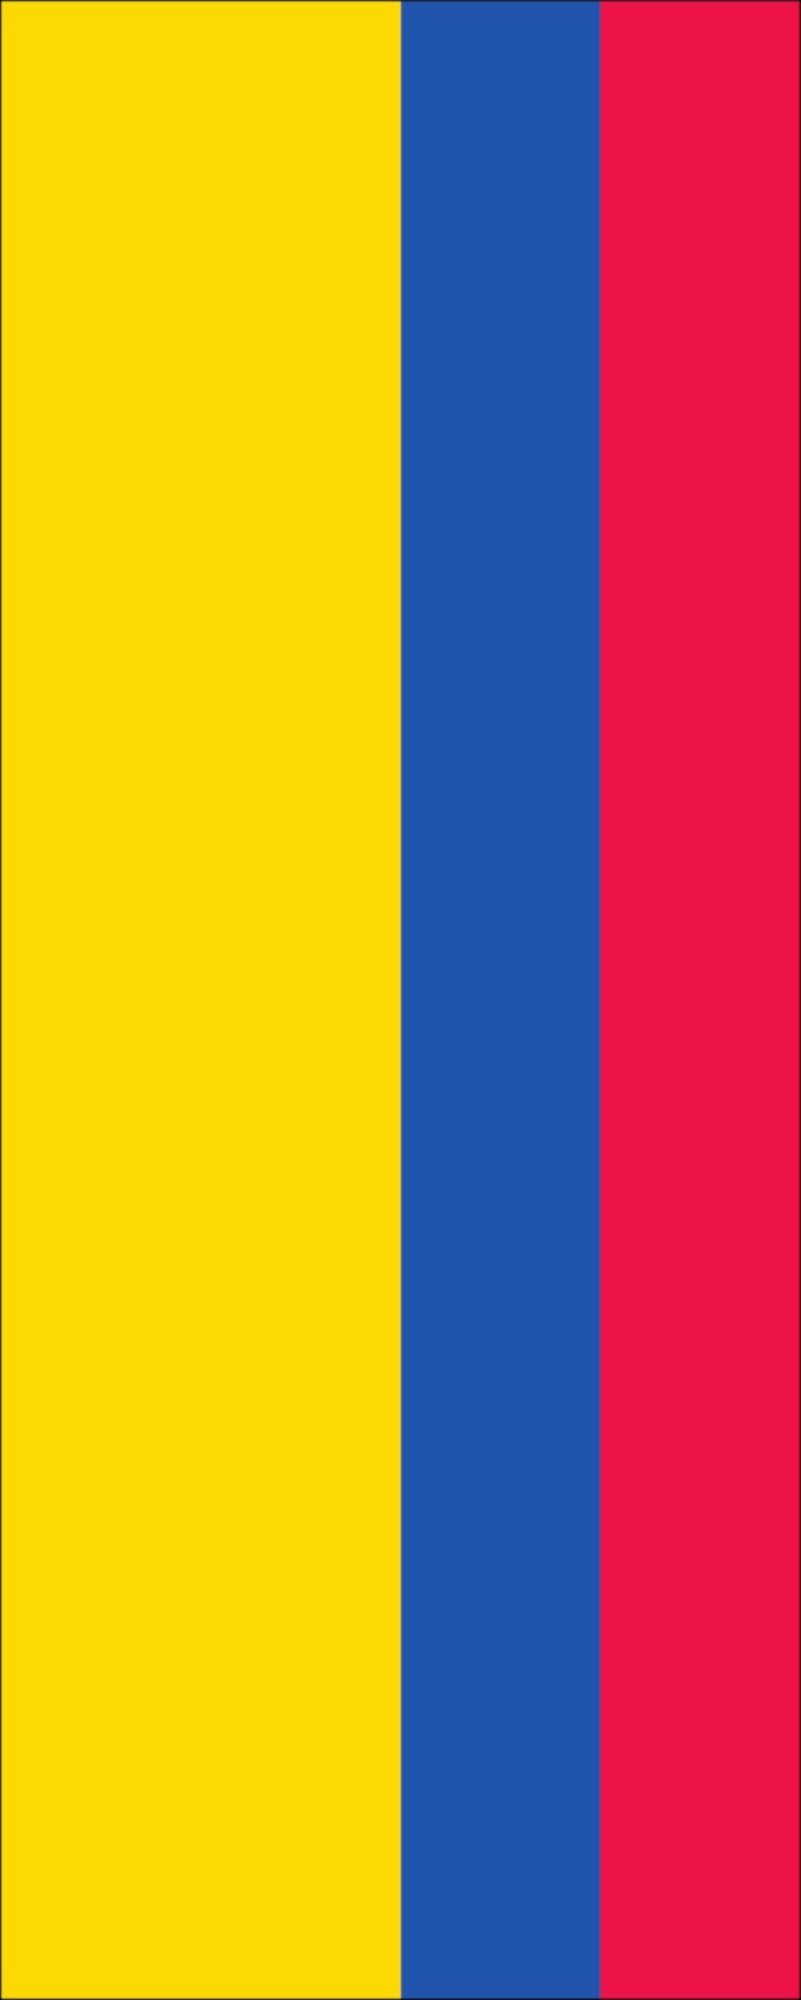 Hochformat g/m² Kolumbien flaggenmeer Flagge Flagge 110